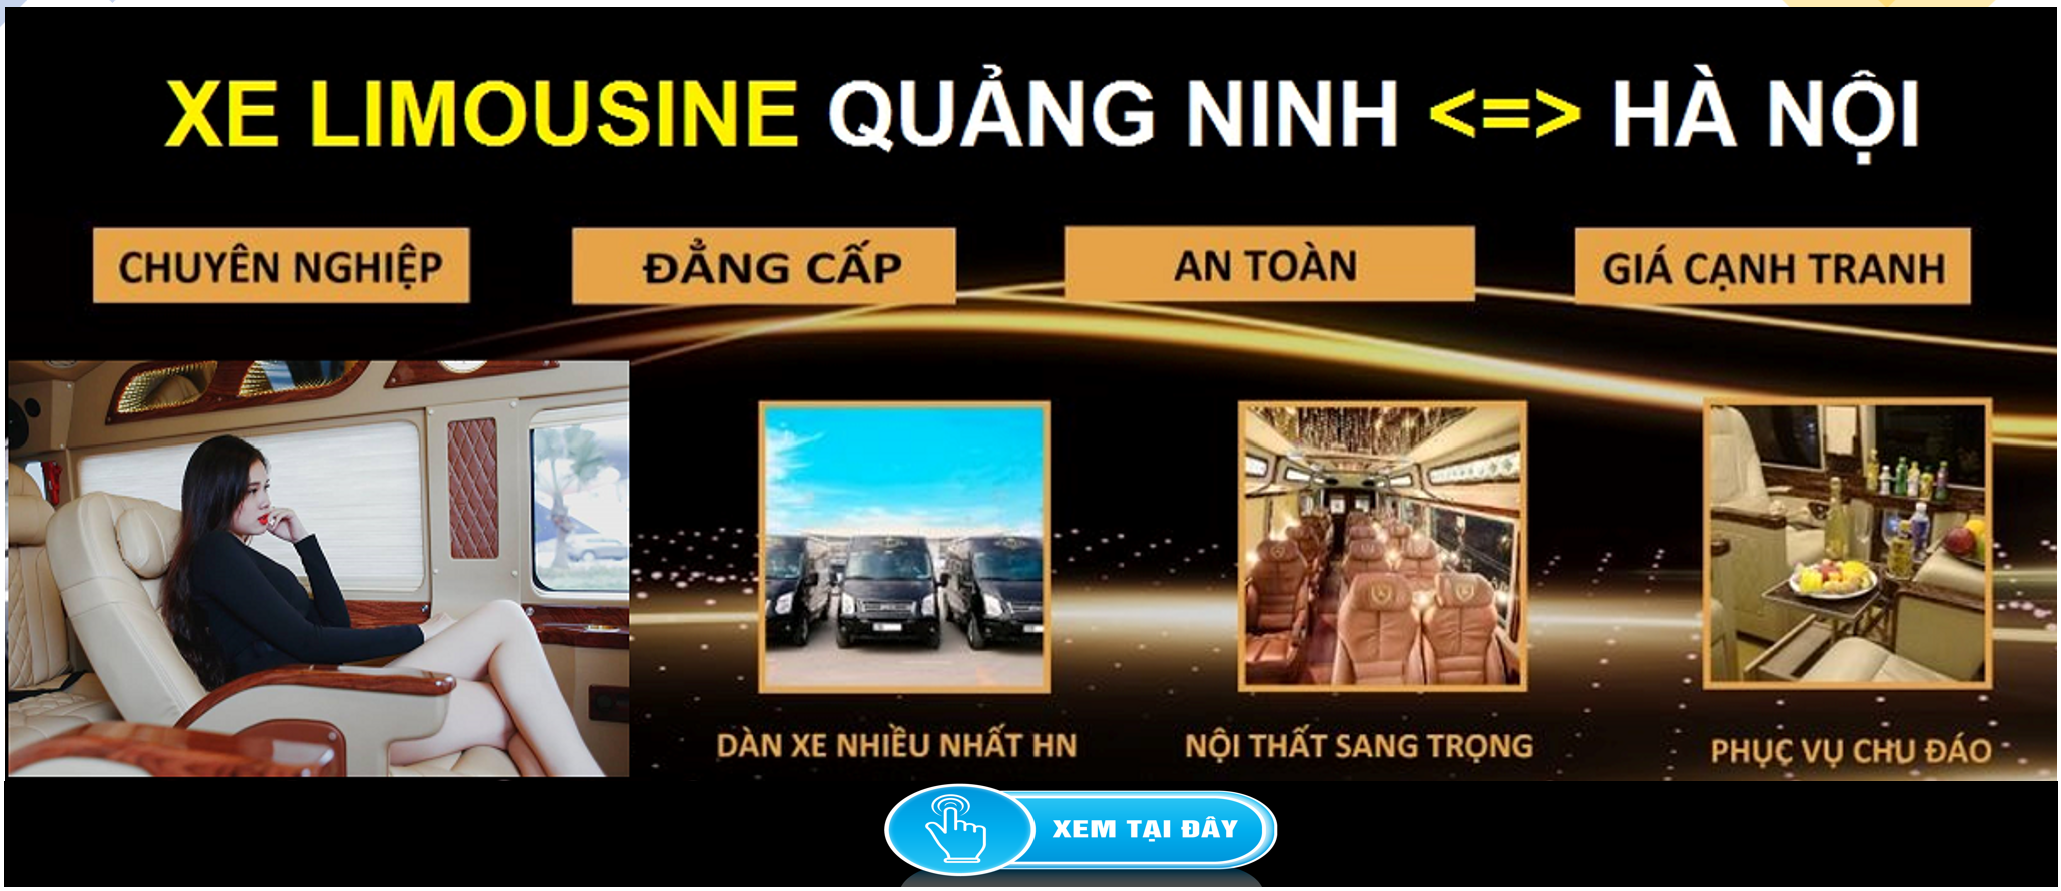 Xe Limousine Ha Noi Quang Ninh dua don tai nha 1d - Khách hàng tiên phong đặt cọc VF8 VF9 ưu đãi gần 600 triệu đồng sau khi VinFast tăng giá xe ?